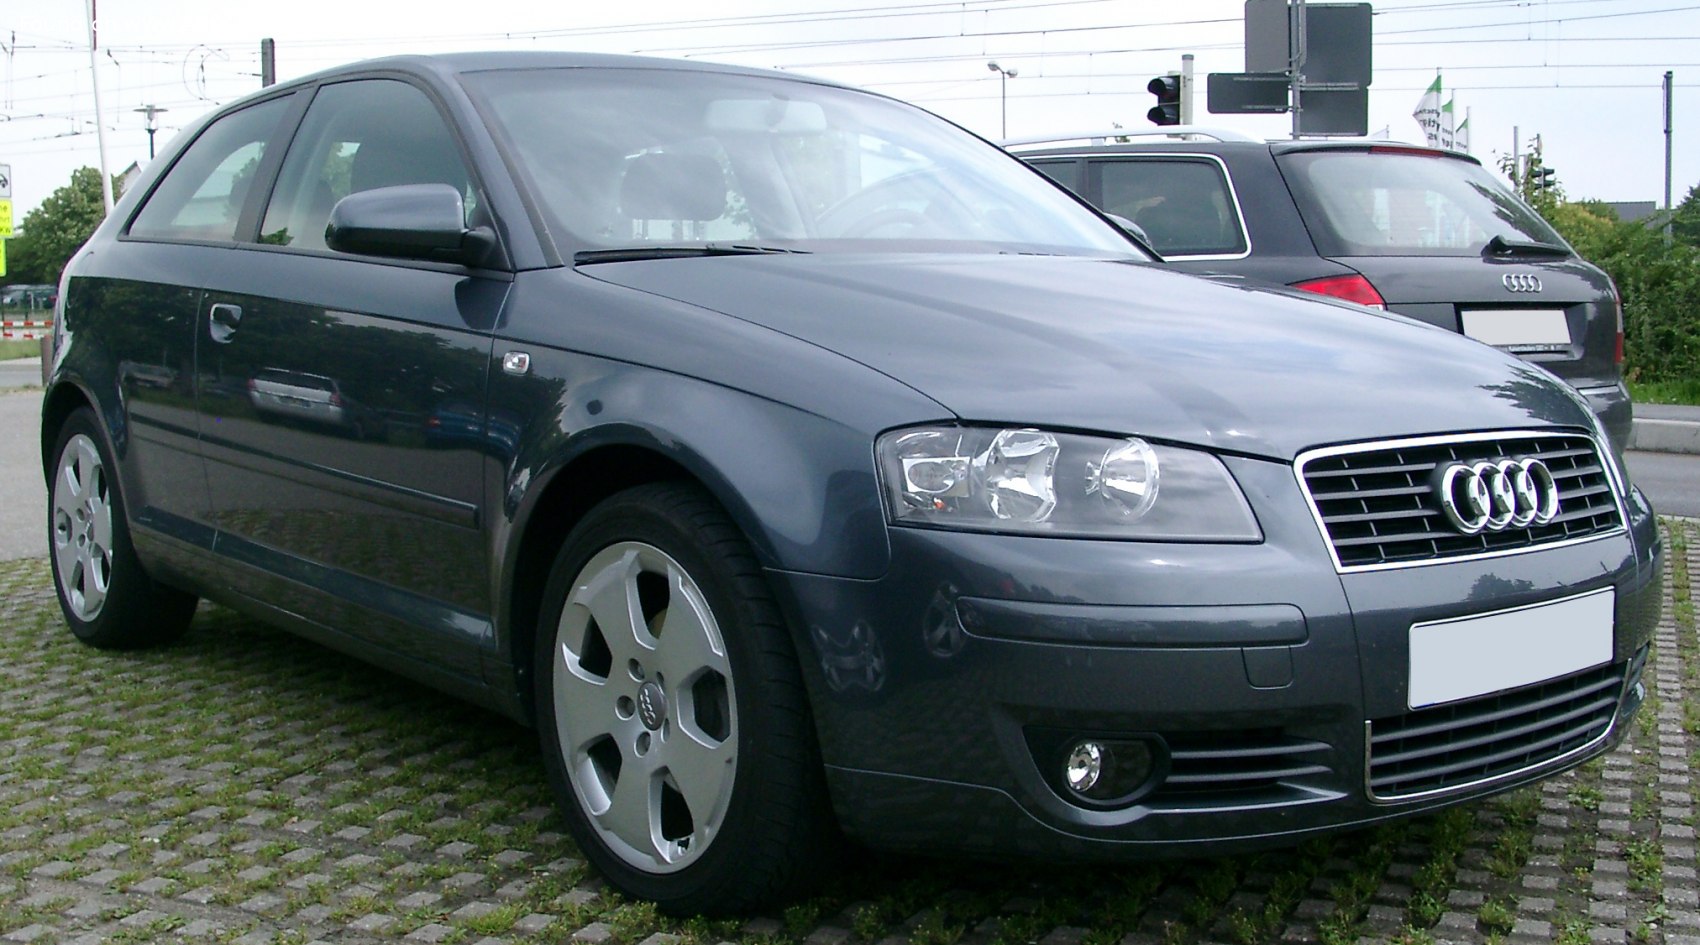 2003 Audi A3 (8P) 1.6 (102 Hp)  Technical specs, data, fuel consumption,  Dimensions